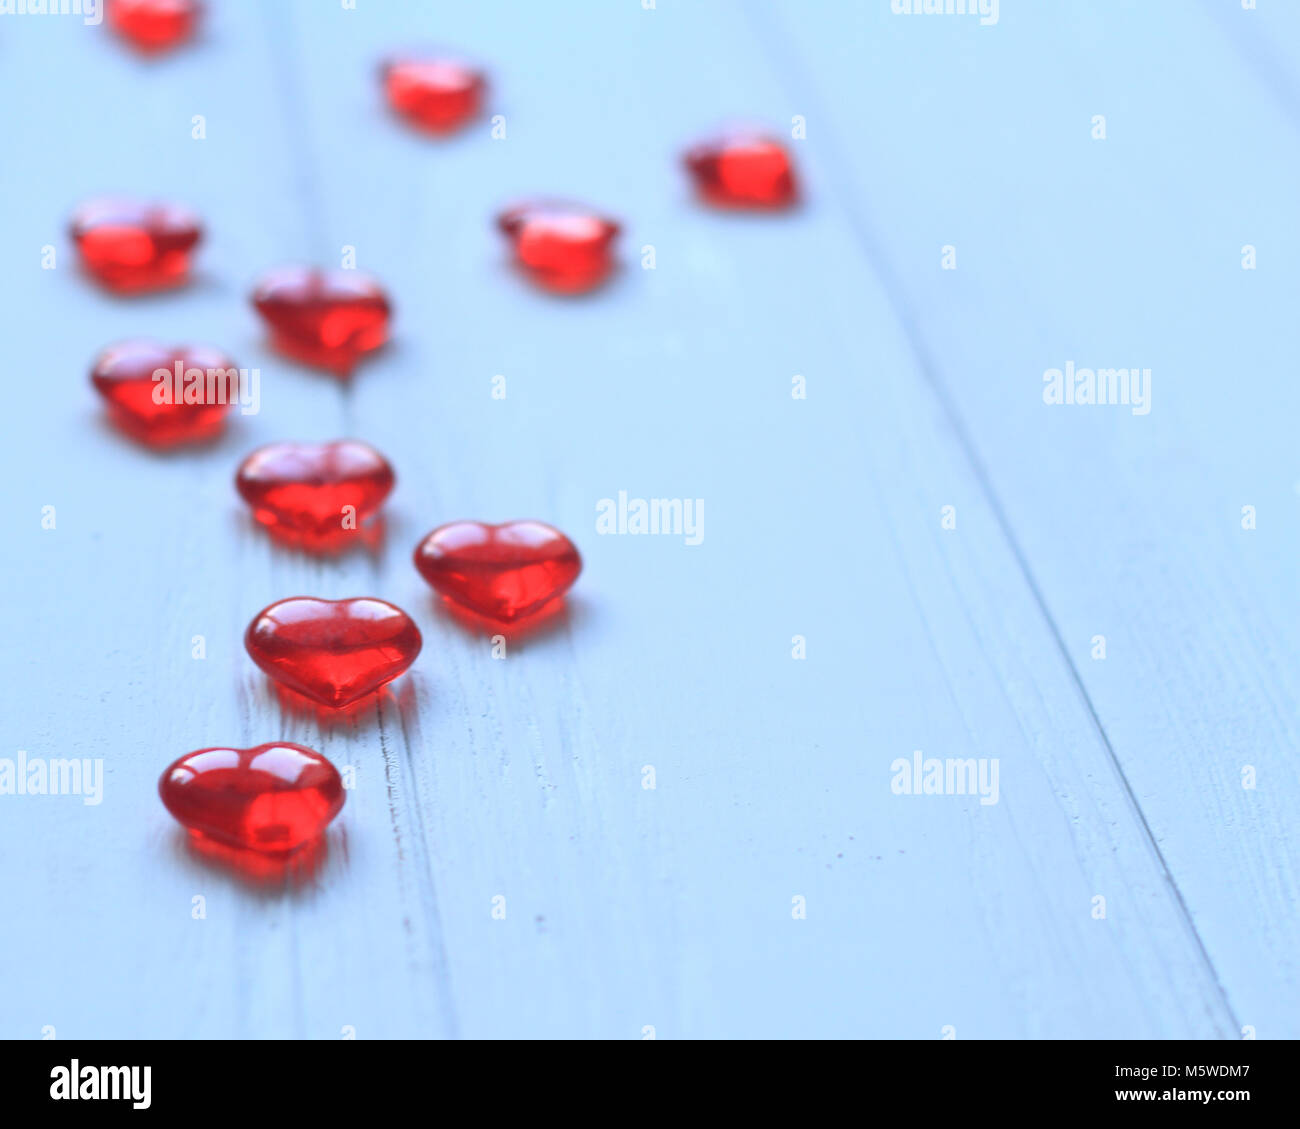 Hintergrundbild von roten Herzen auf hellen Hintergrund. Stockfoto